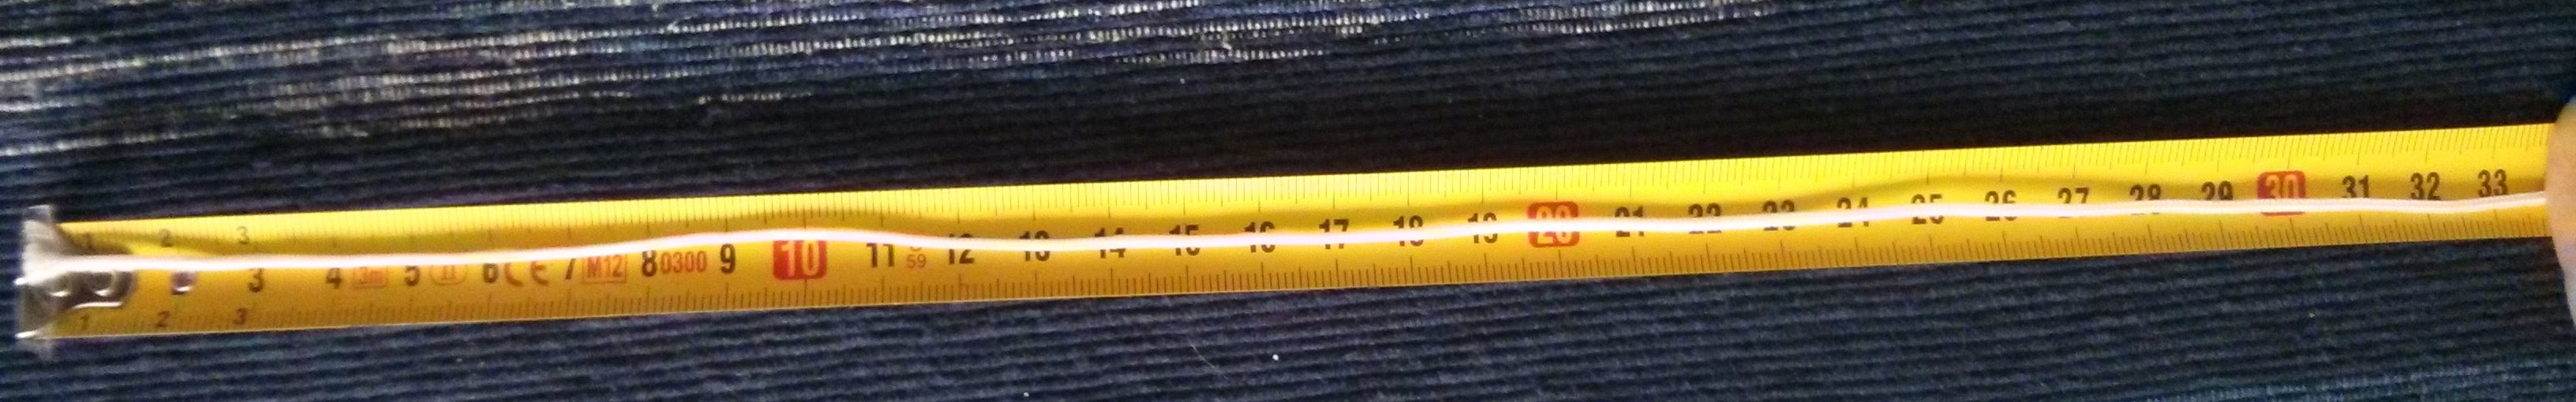 El trozo de cordón utilizado, medido sobre una cinta métrica